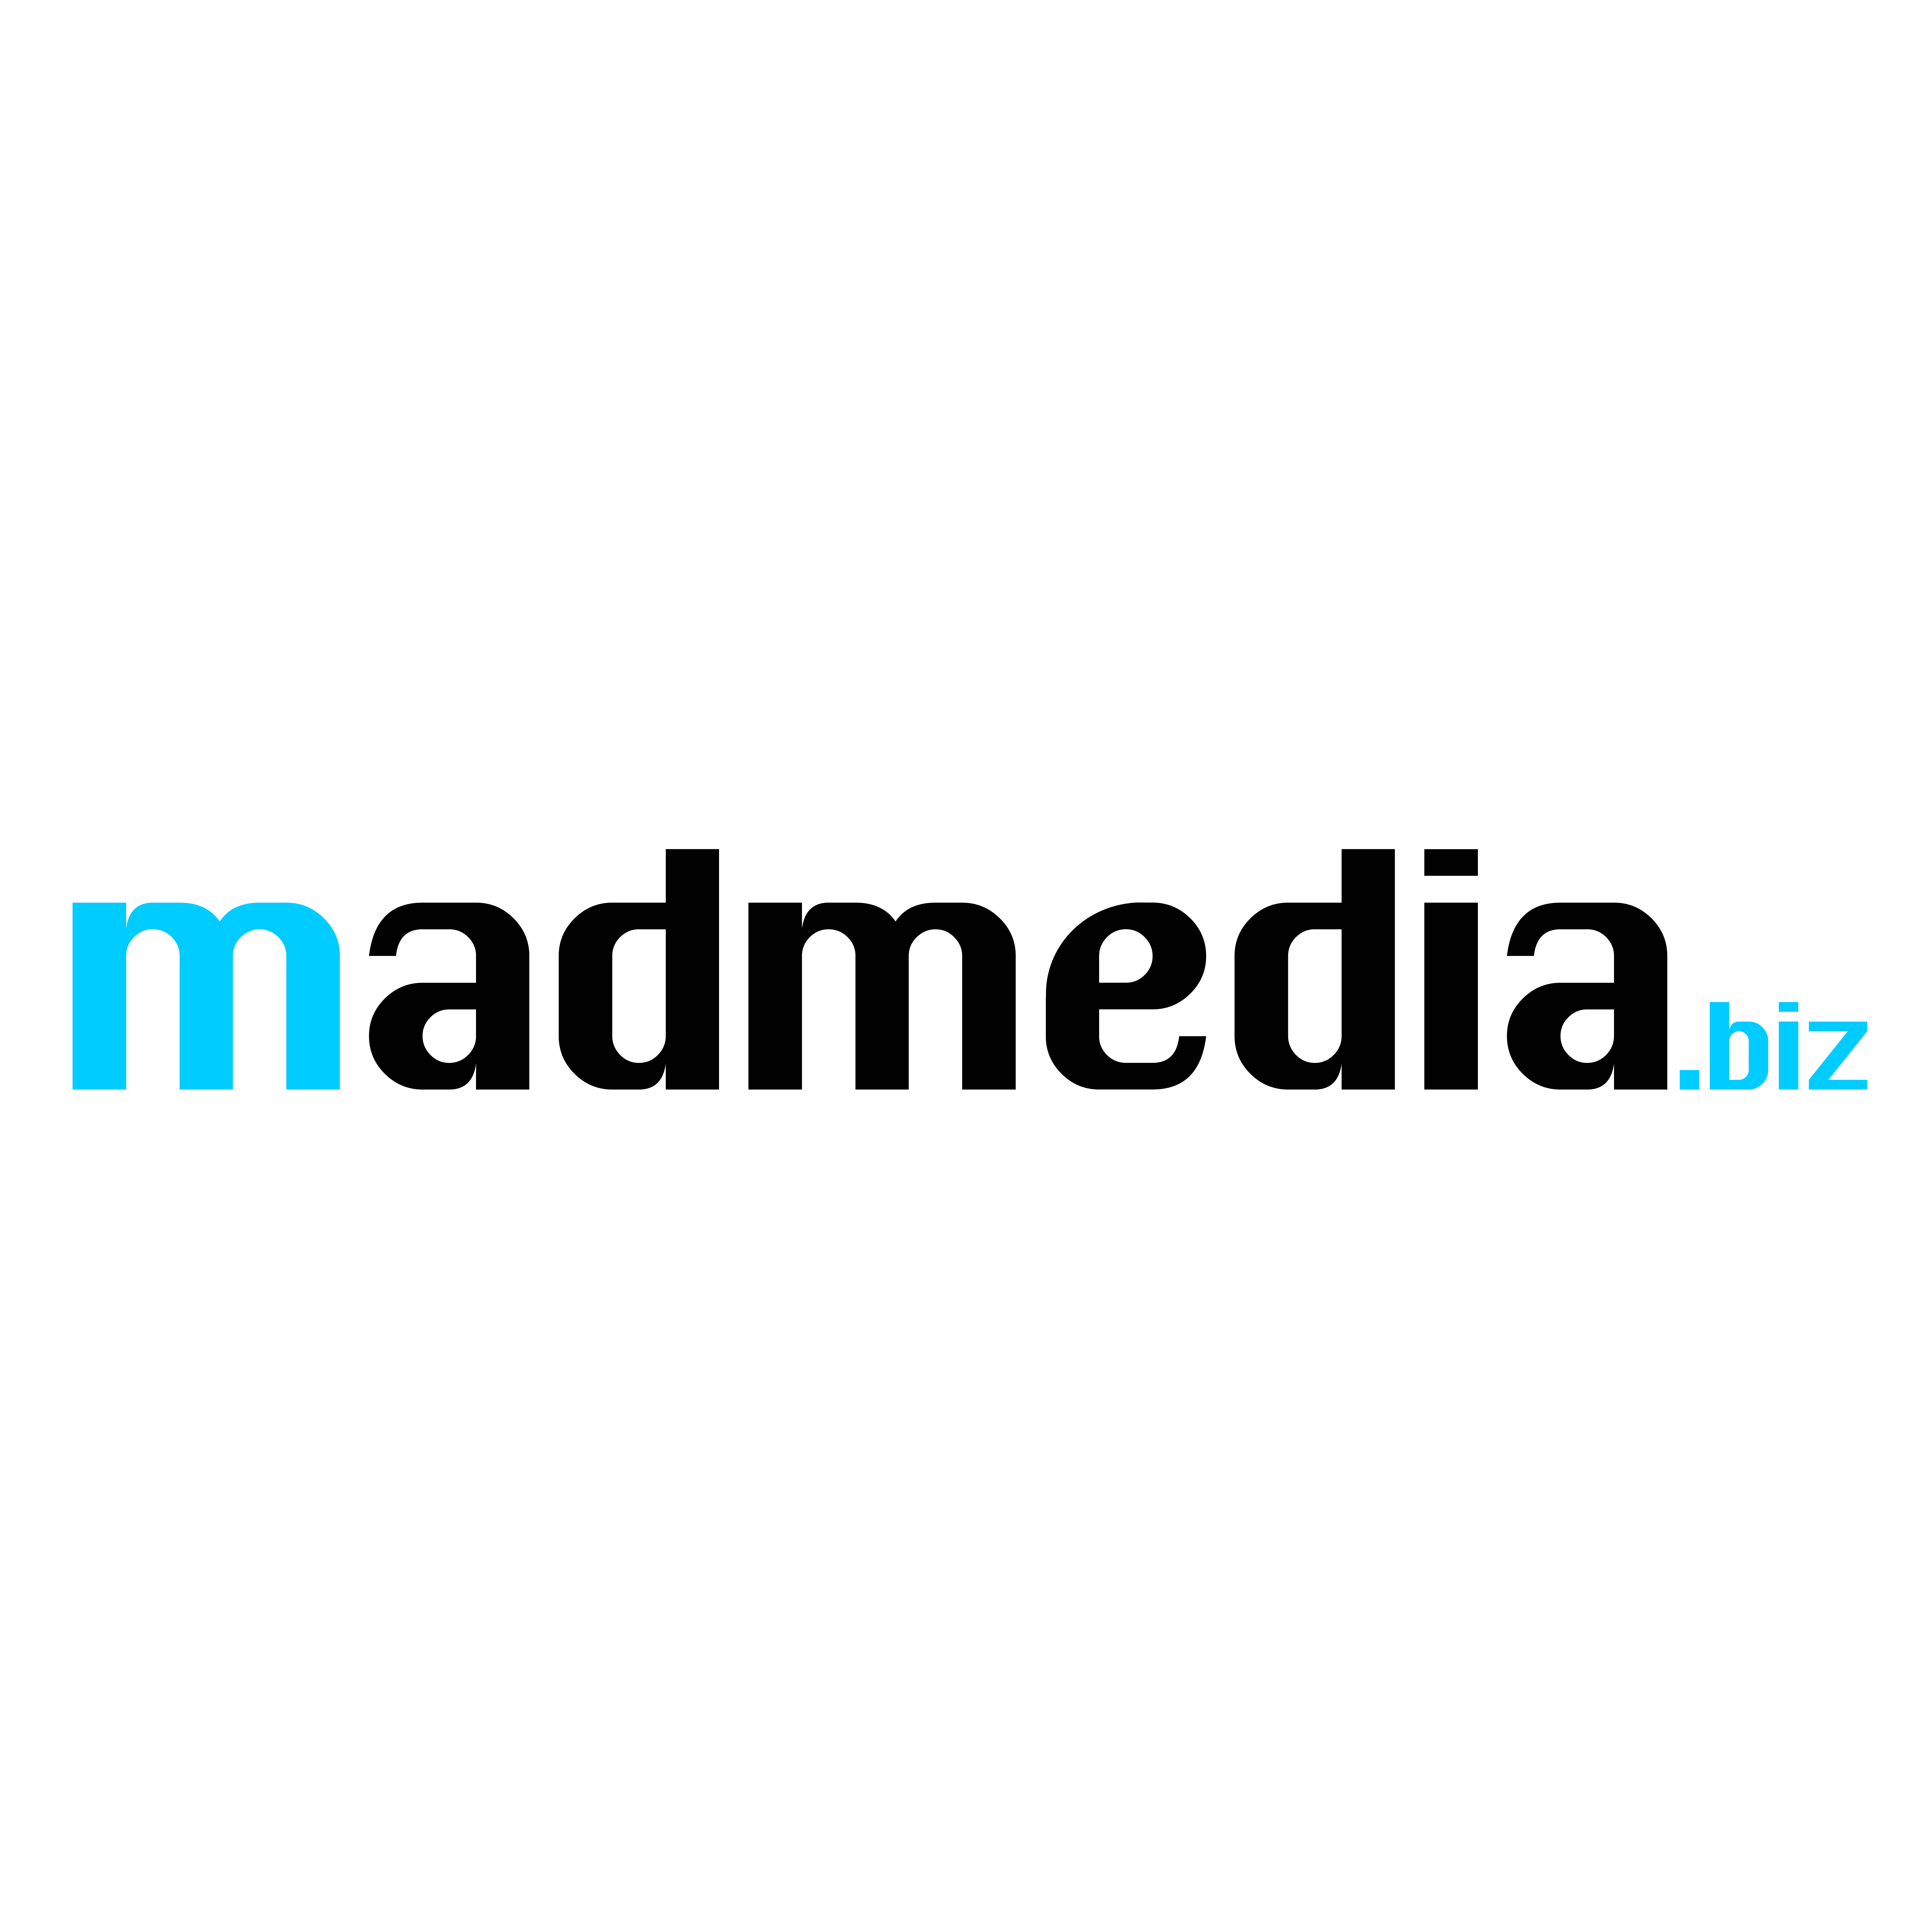 Logo madmedia.biz